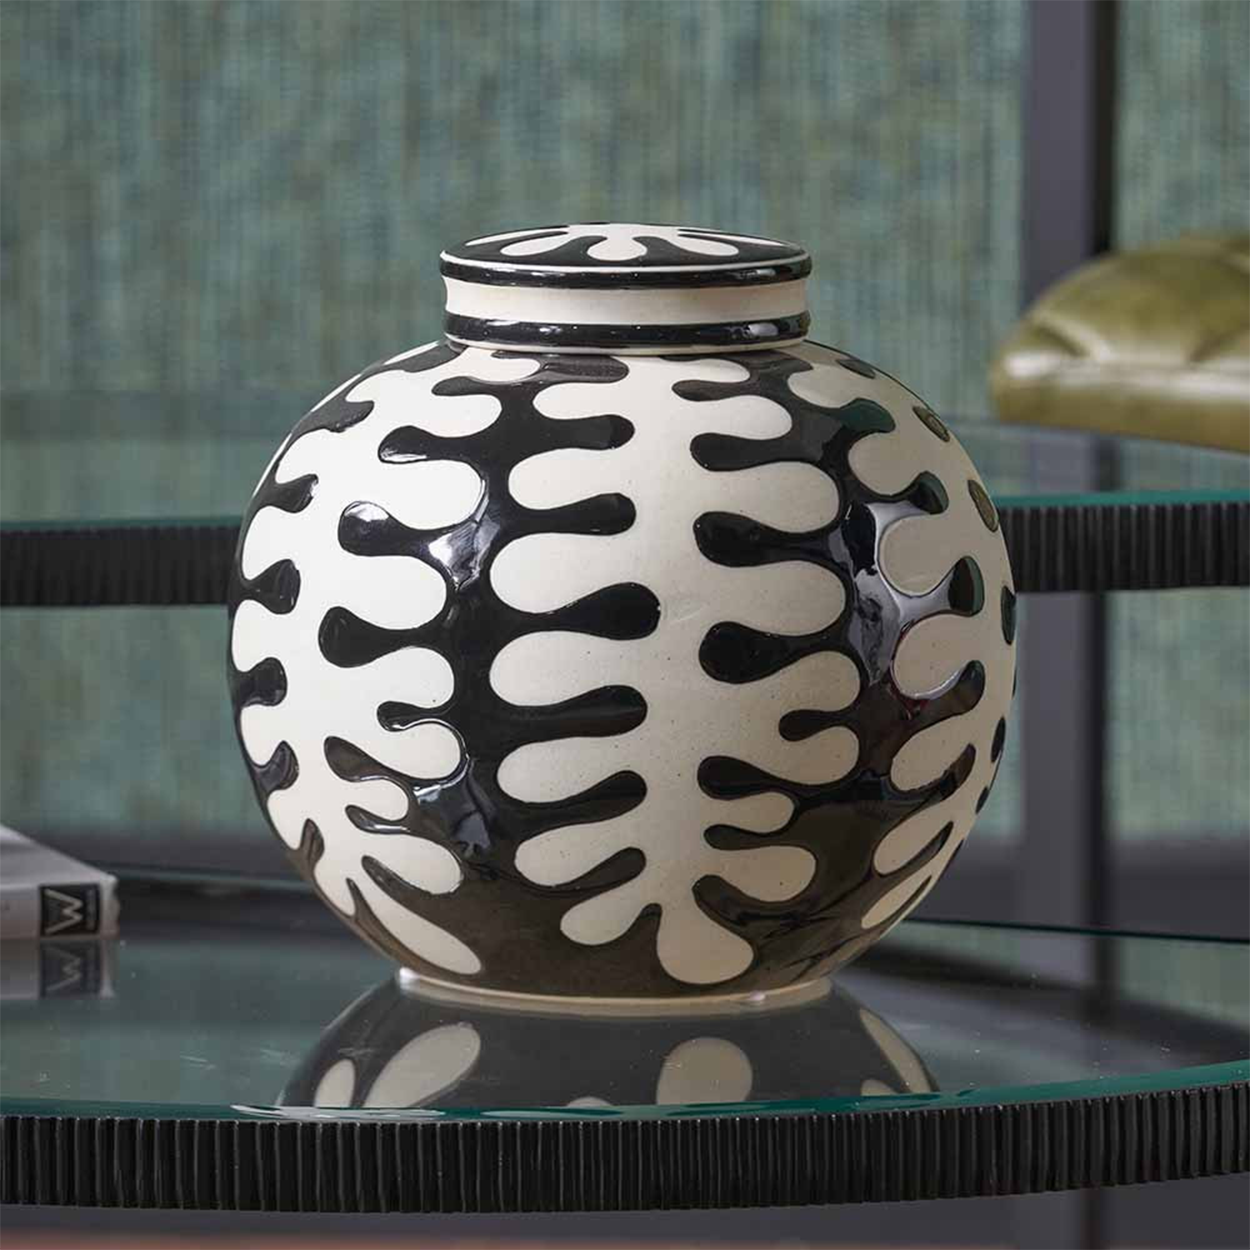 Elkorn Black and White Ceramic Coral Design Ginger Jar